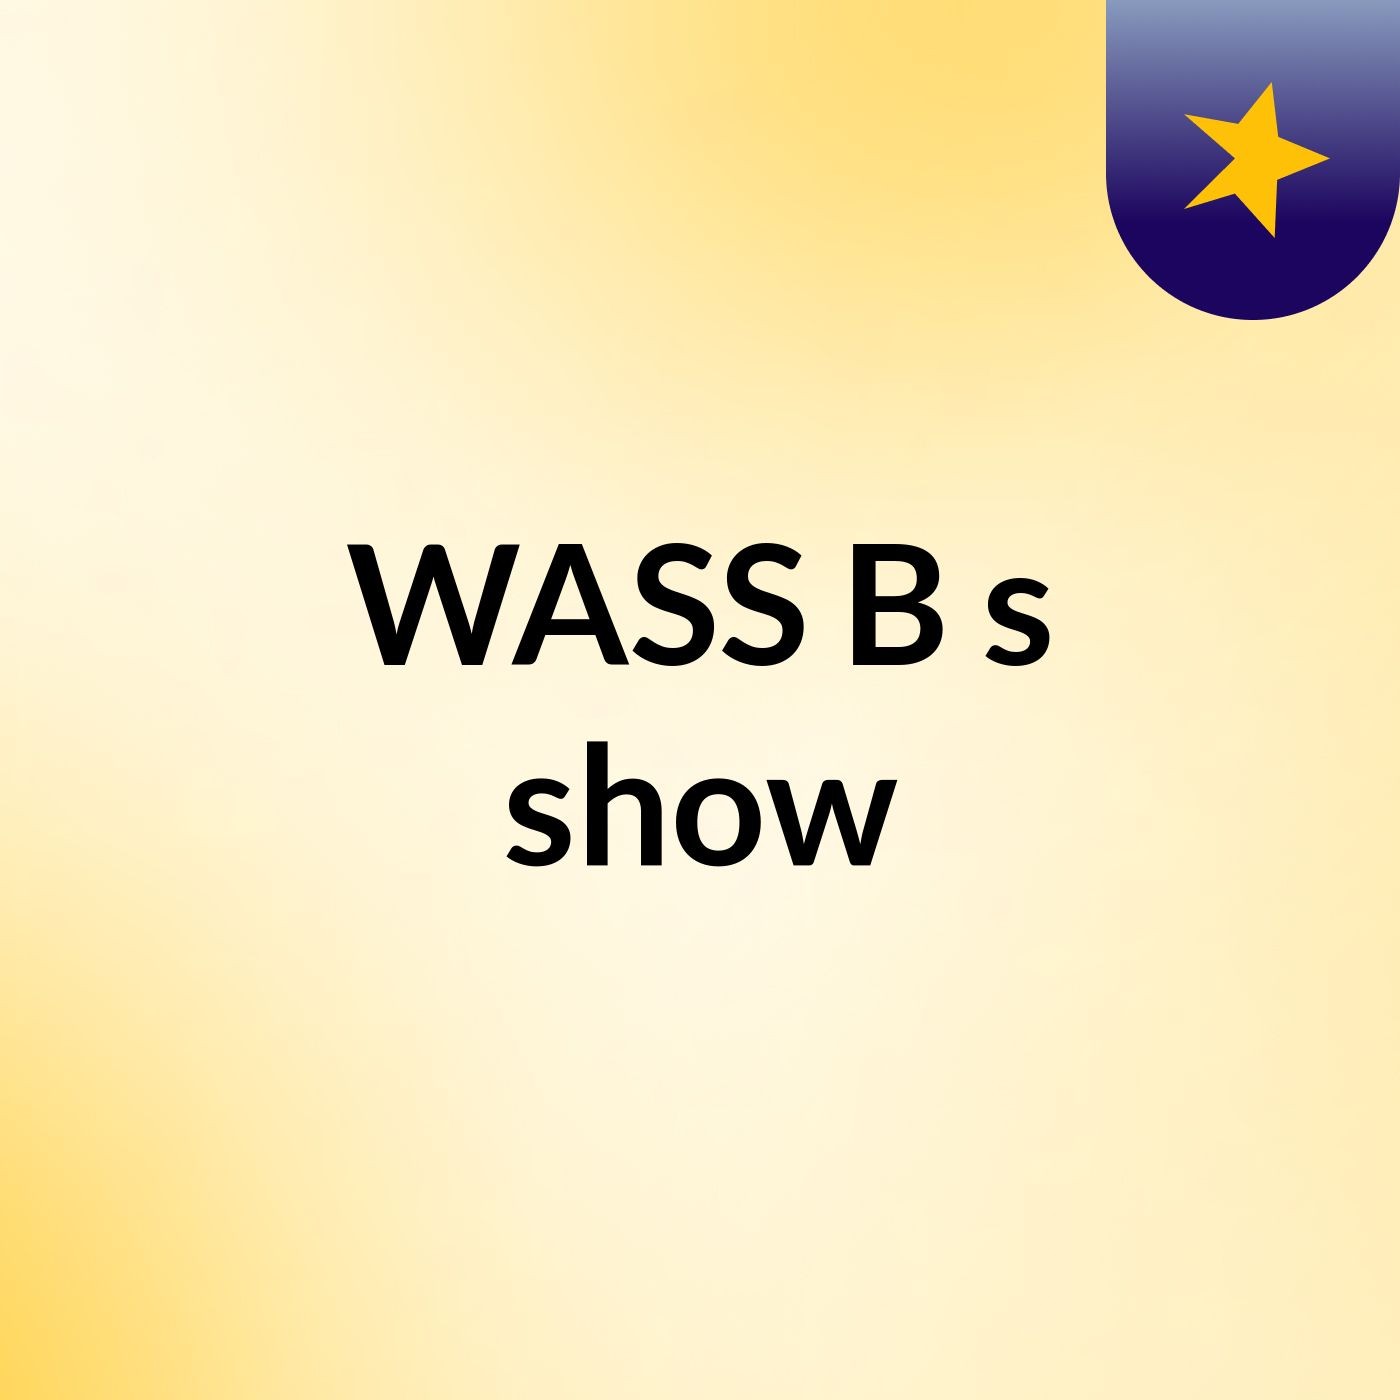 WASS B's show